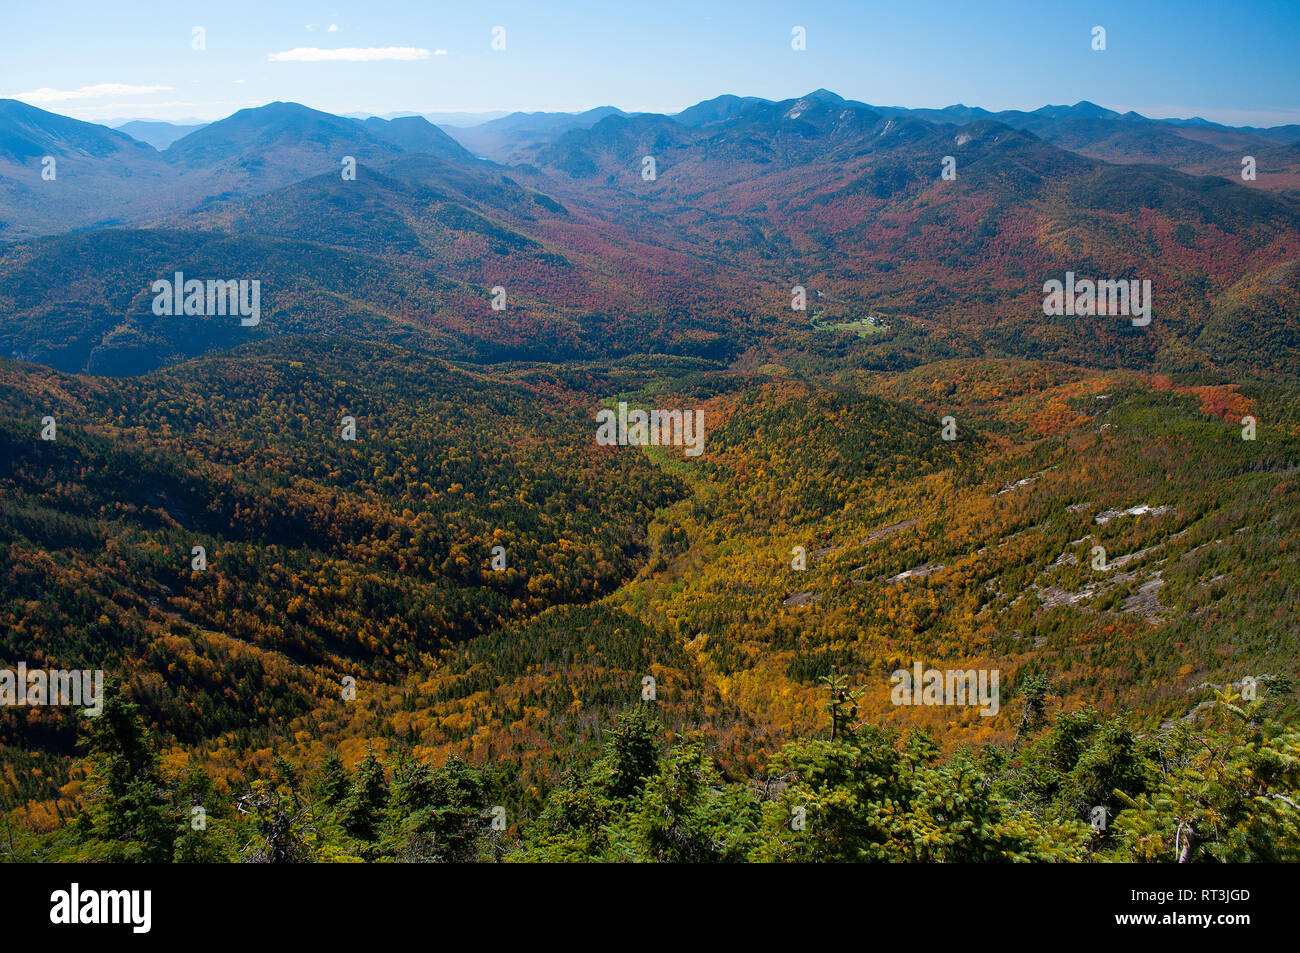 Blick vom Gipfel des riesigen Berg in den hohen Gipfeln der Region der Adirondack Forest Preserve im Staat New York Stockfoto